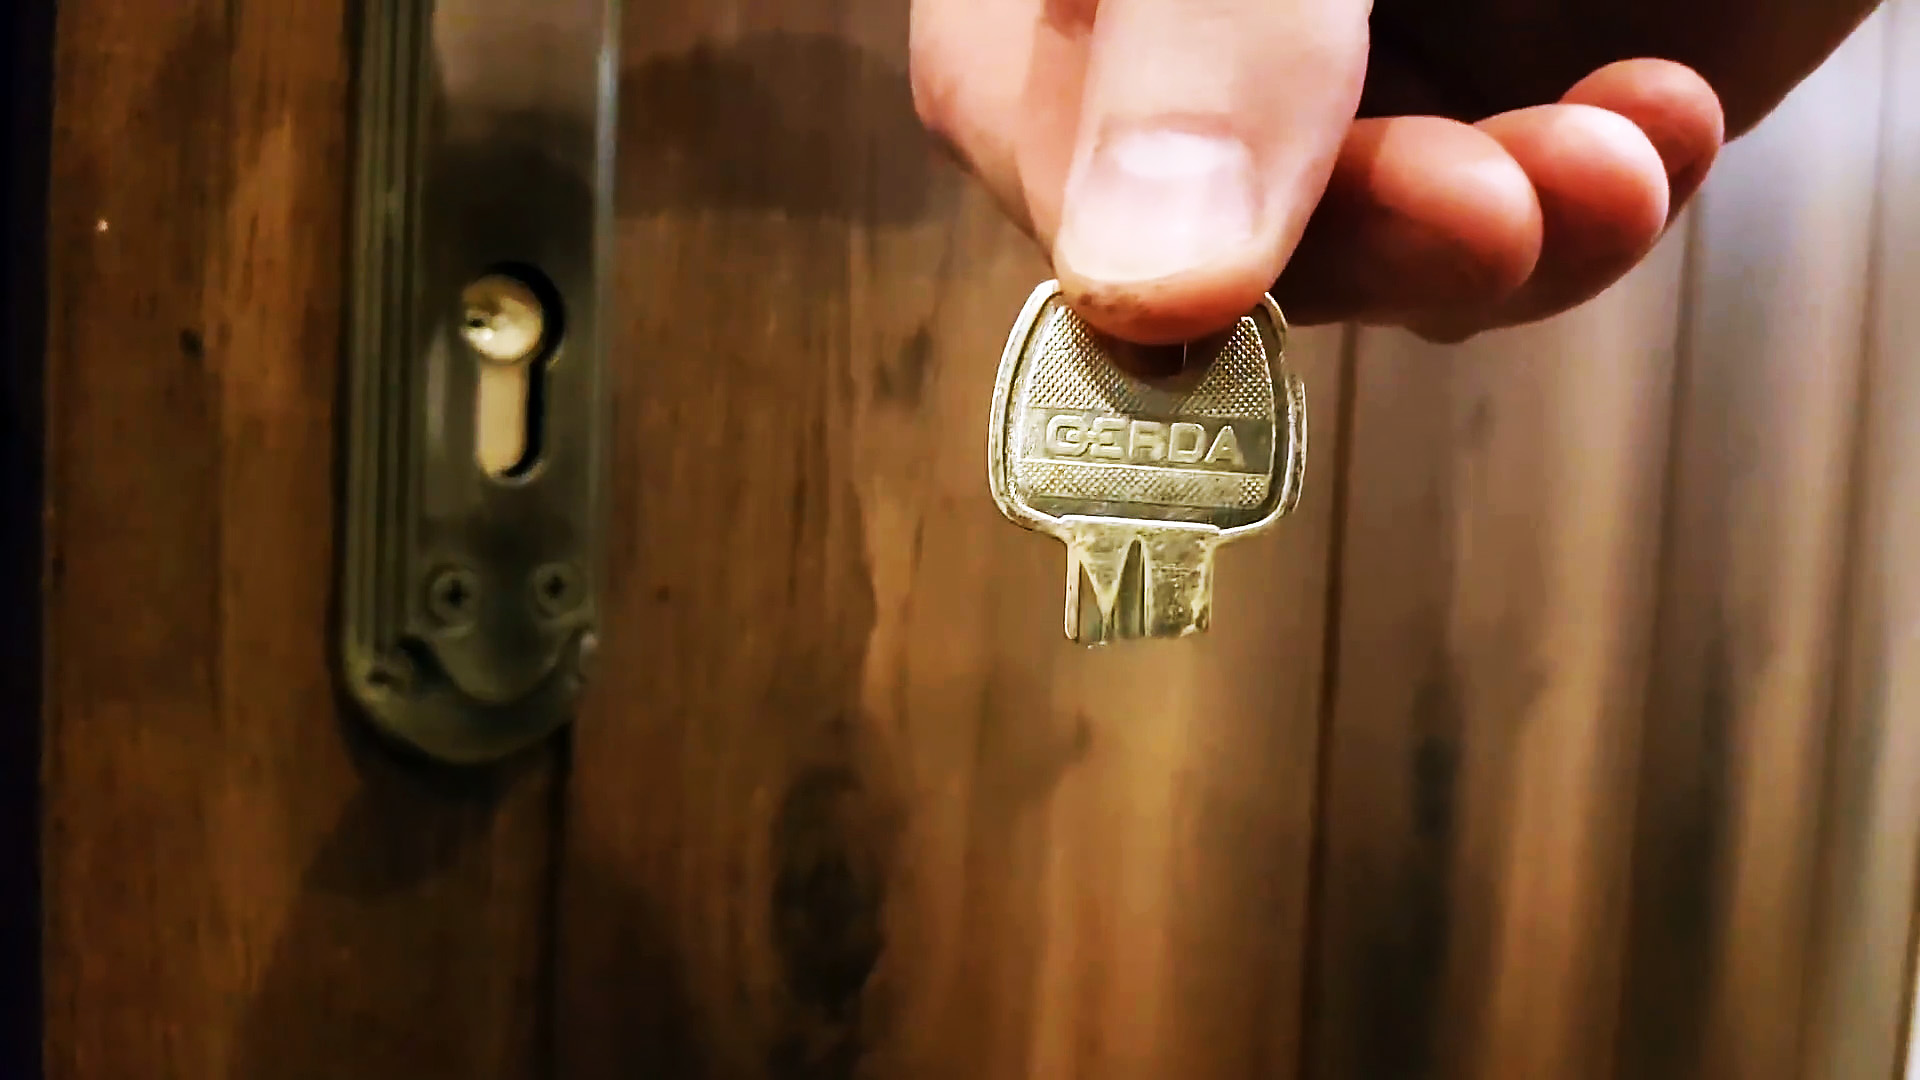 Можно ли извлечь сломанный ключ из замка?